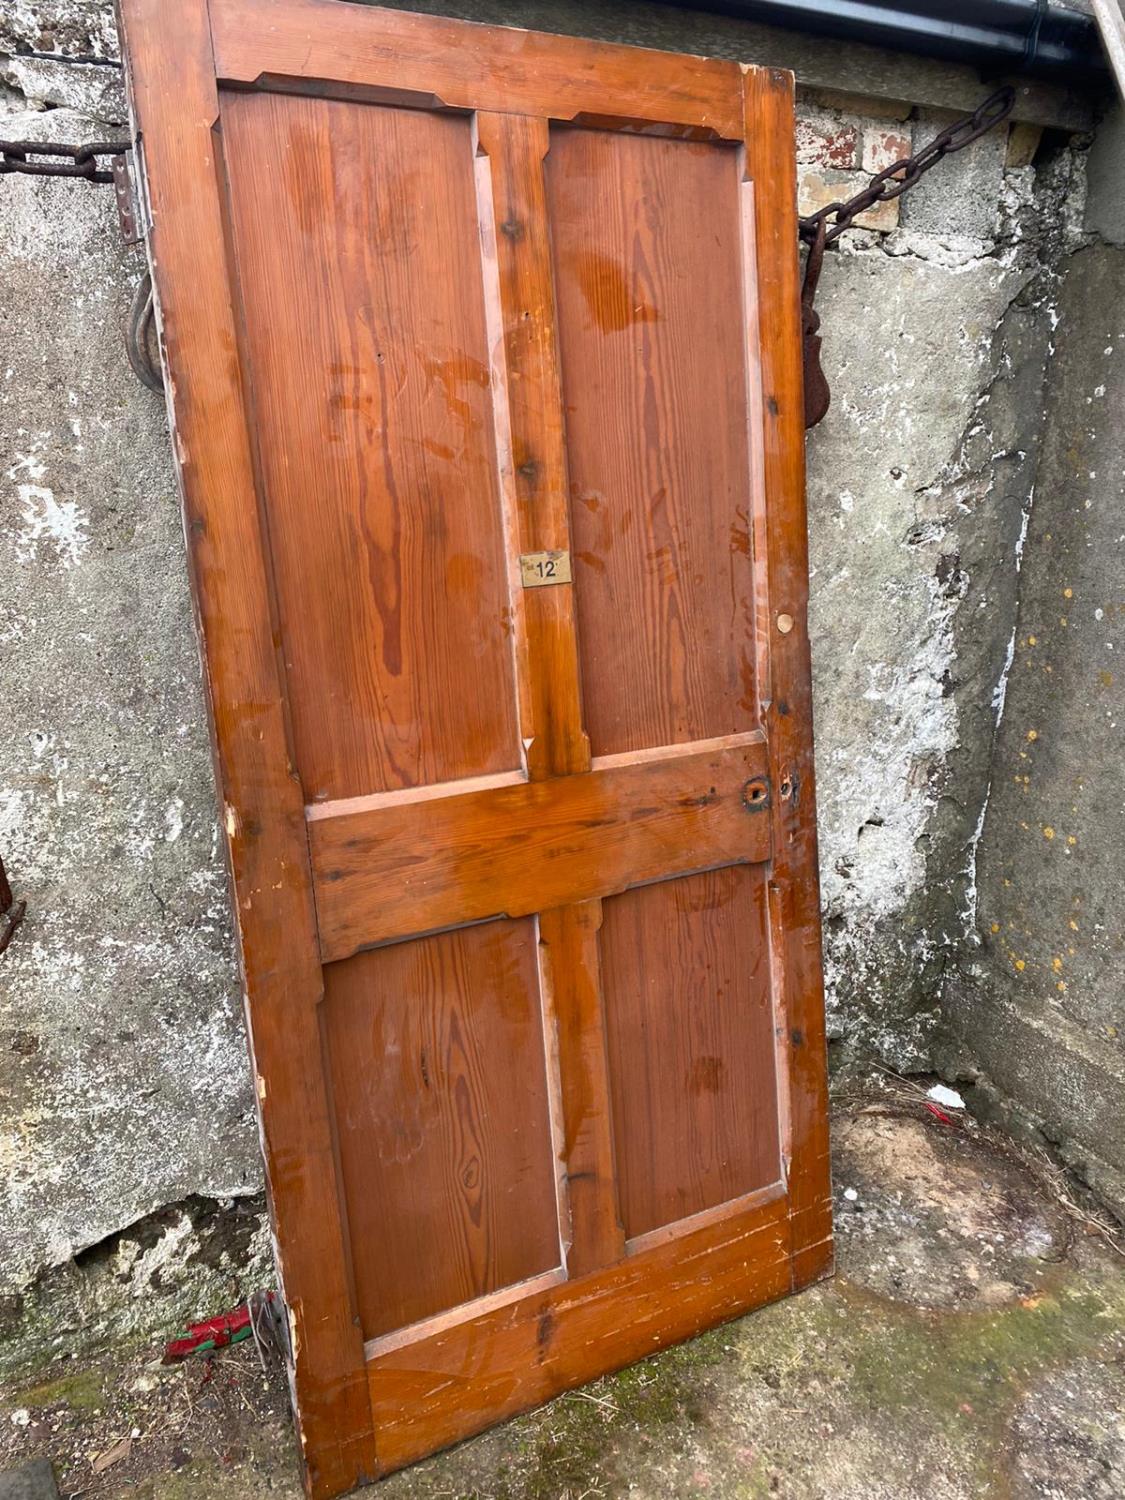 Pitch pine door